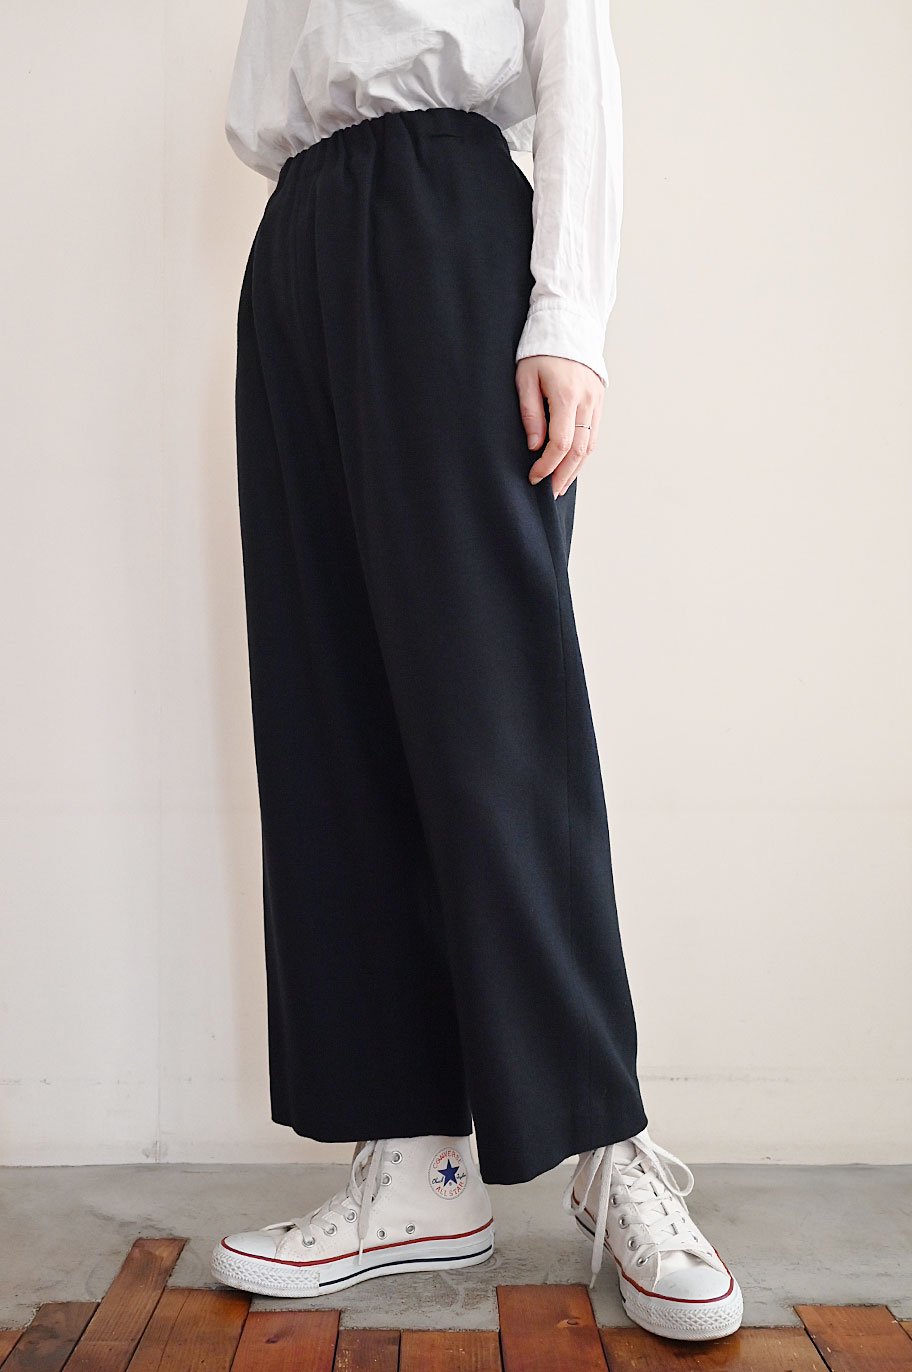 日本最大級 極美品 miu - miu ストレート ワイド パンツ 黒パンツ 